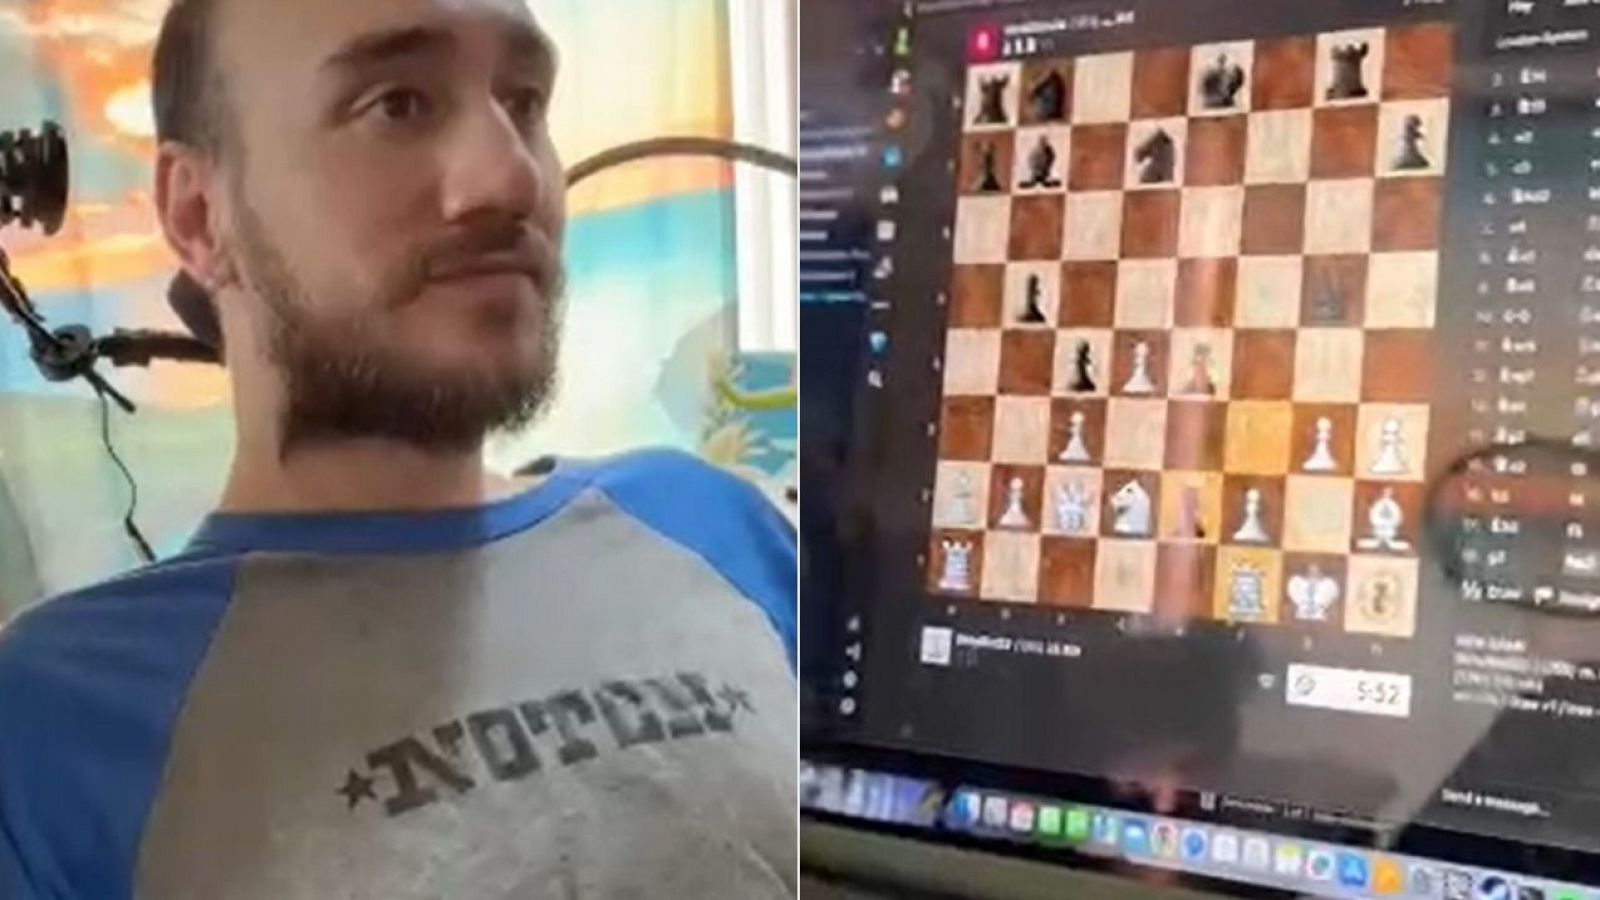 Fotograma de la partida de ajedrez del paciente Noland Arbaugh.